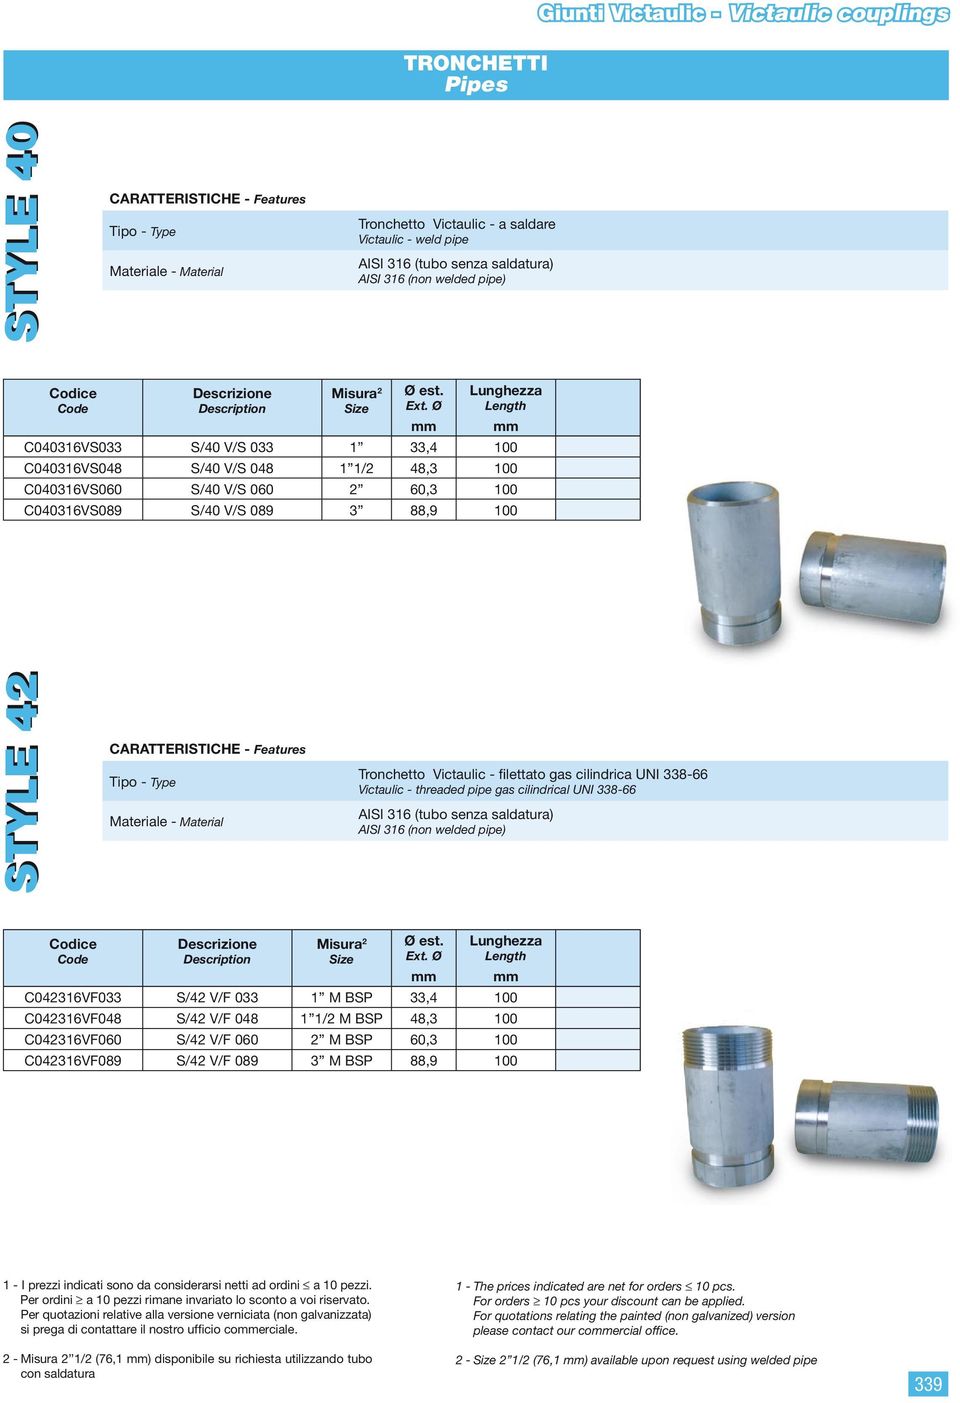 - Material Tronchetto Victaulic - filettato gas cilindrica UNI 338-66 Victaulic - threaded pipe gas cilindrical UNI 338-66 AISI 316 (tubo senza saldatura) AISI 316 (non welded pipe) 2 Lunghezza